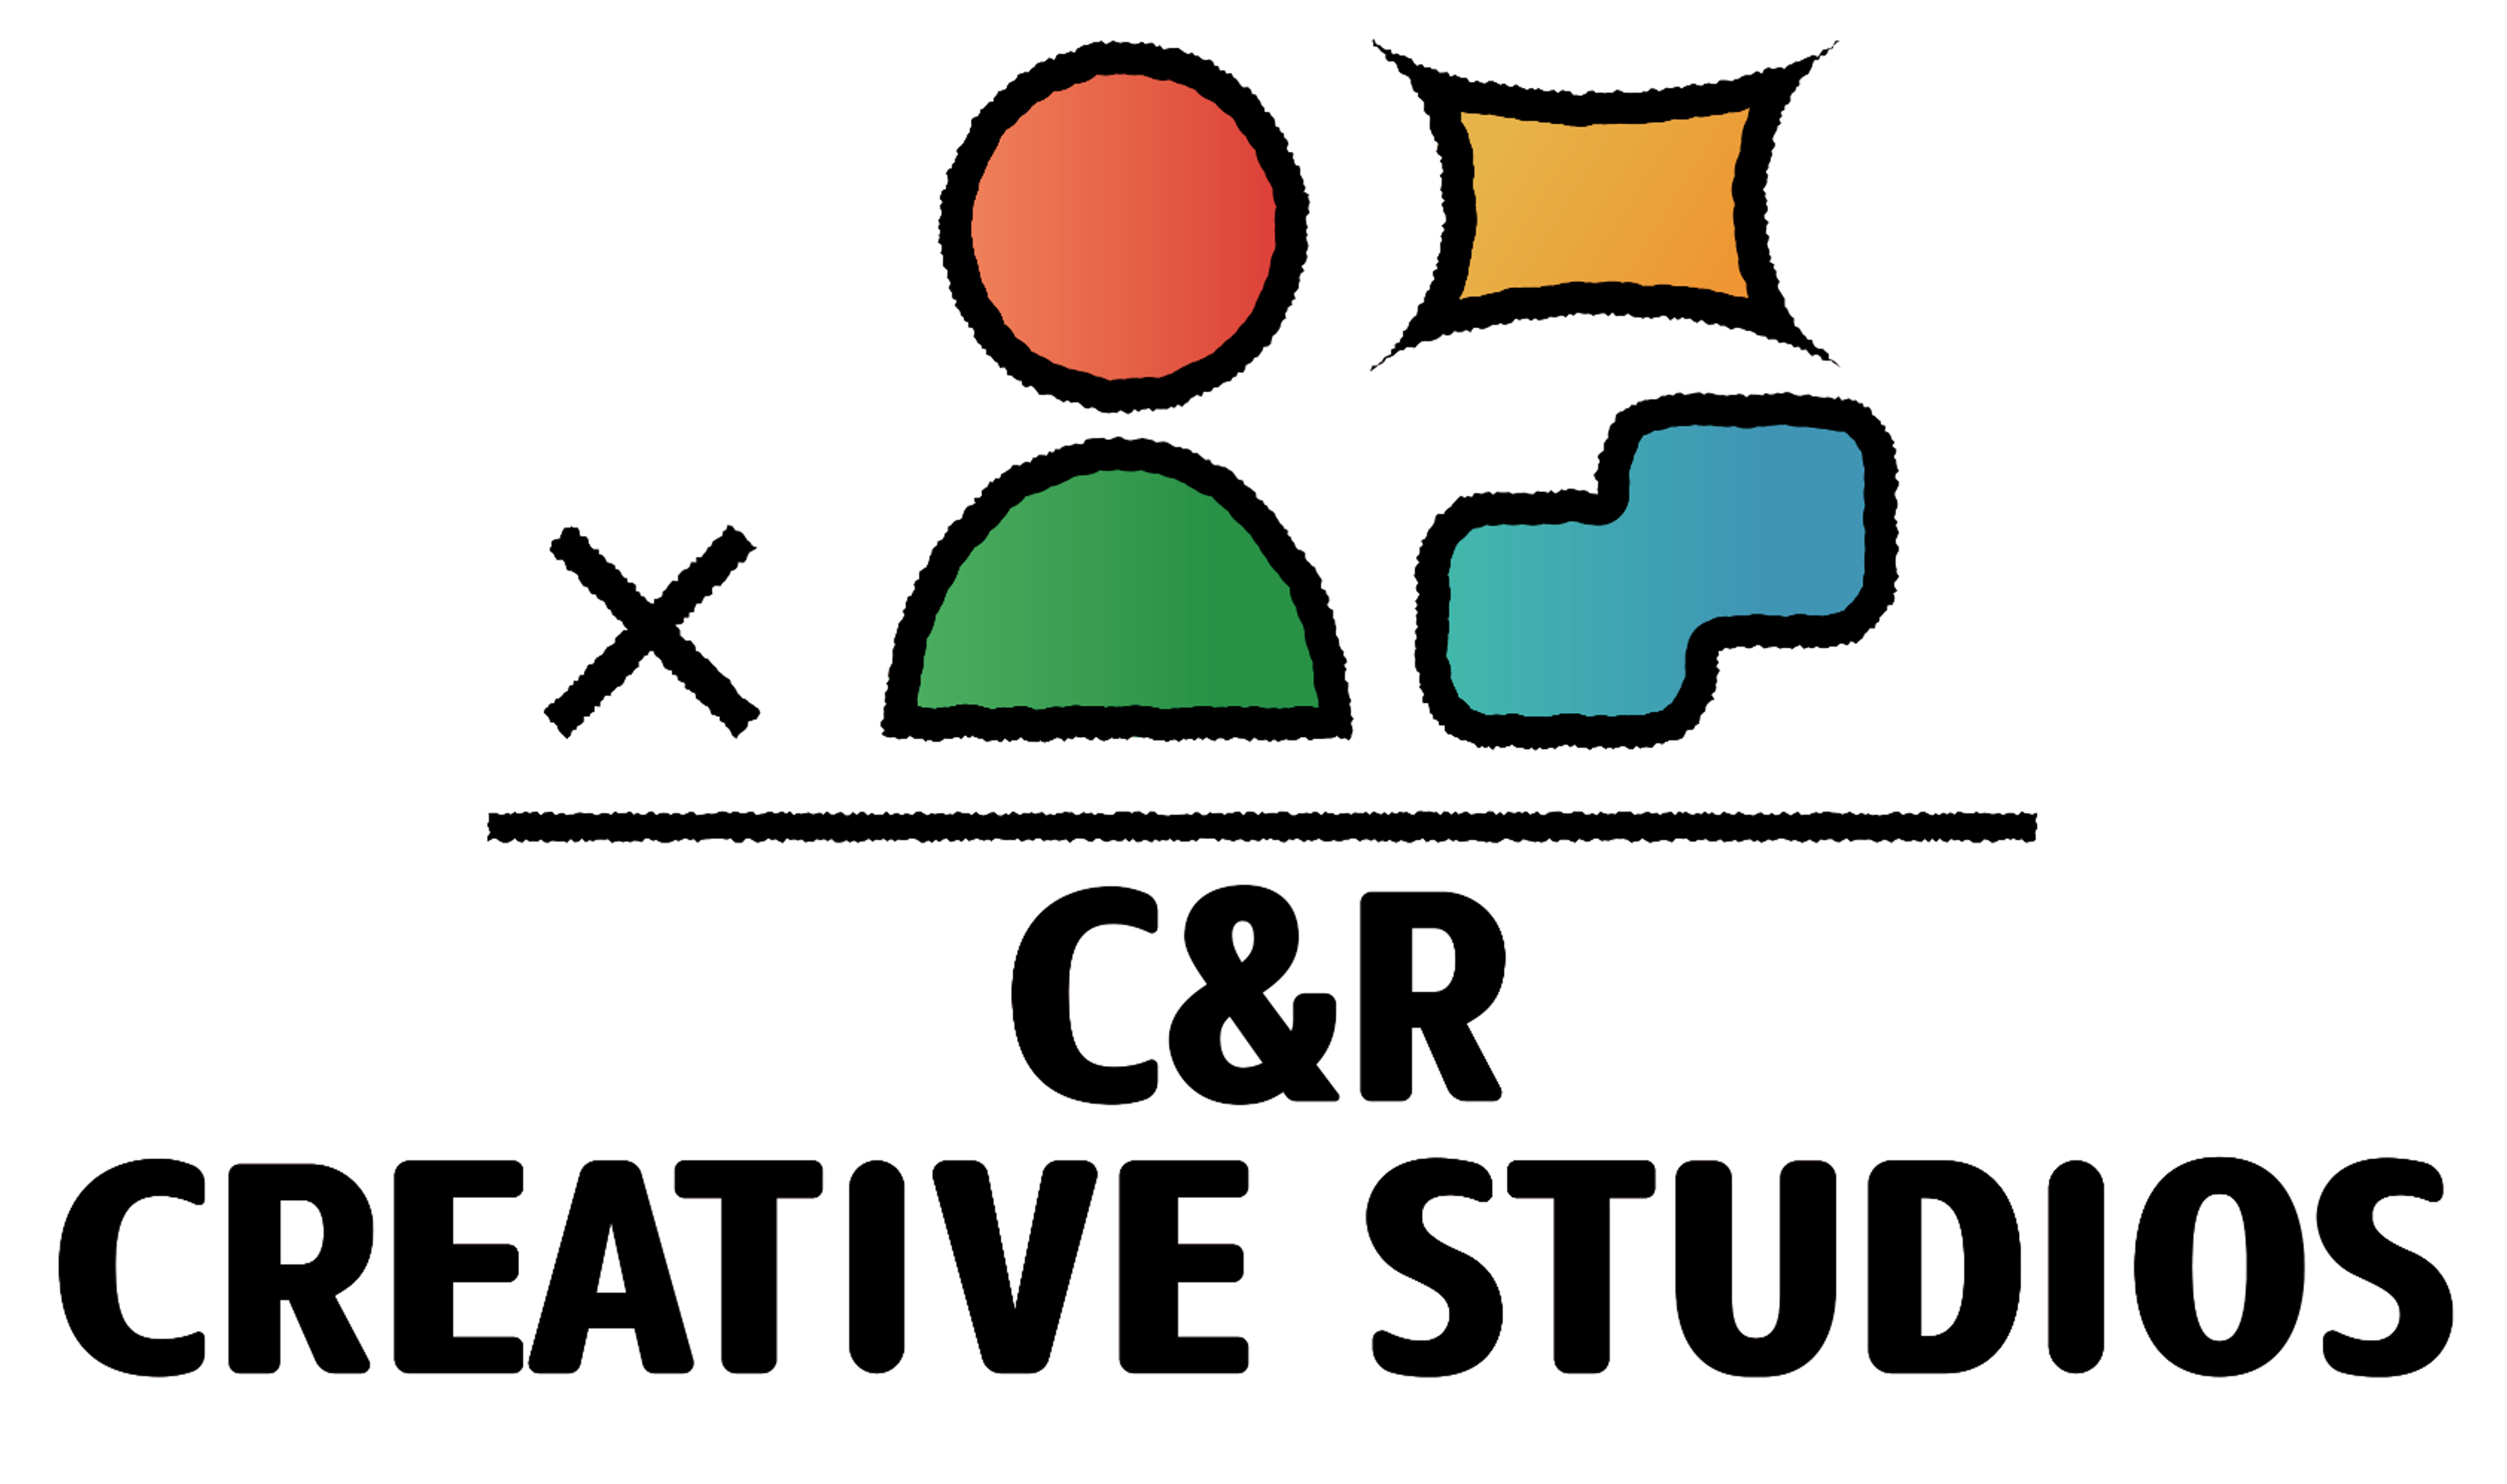 C&R CREATIVE STUDIOS